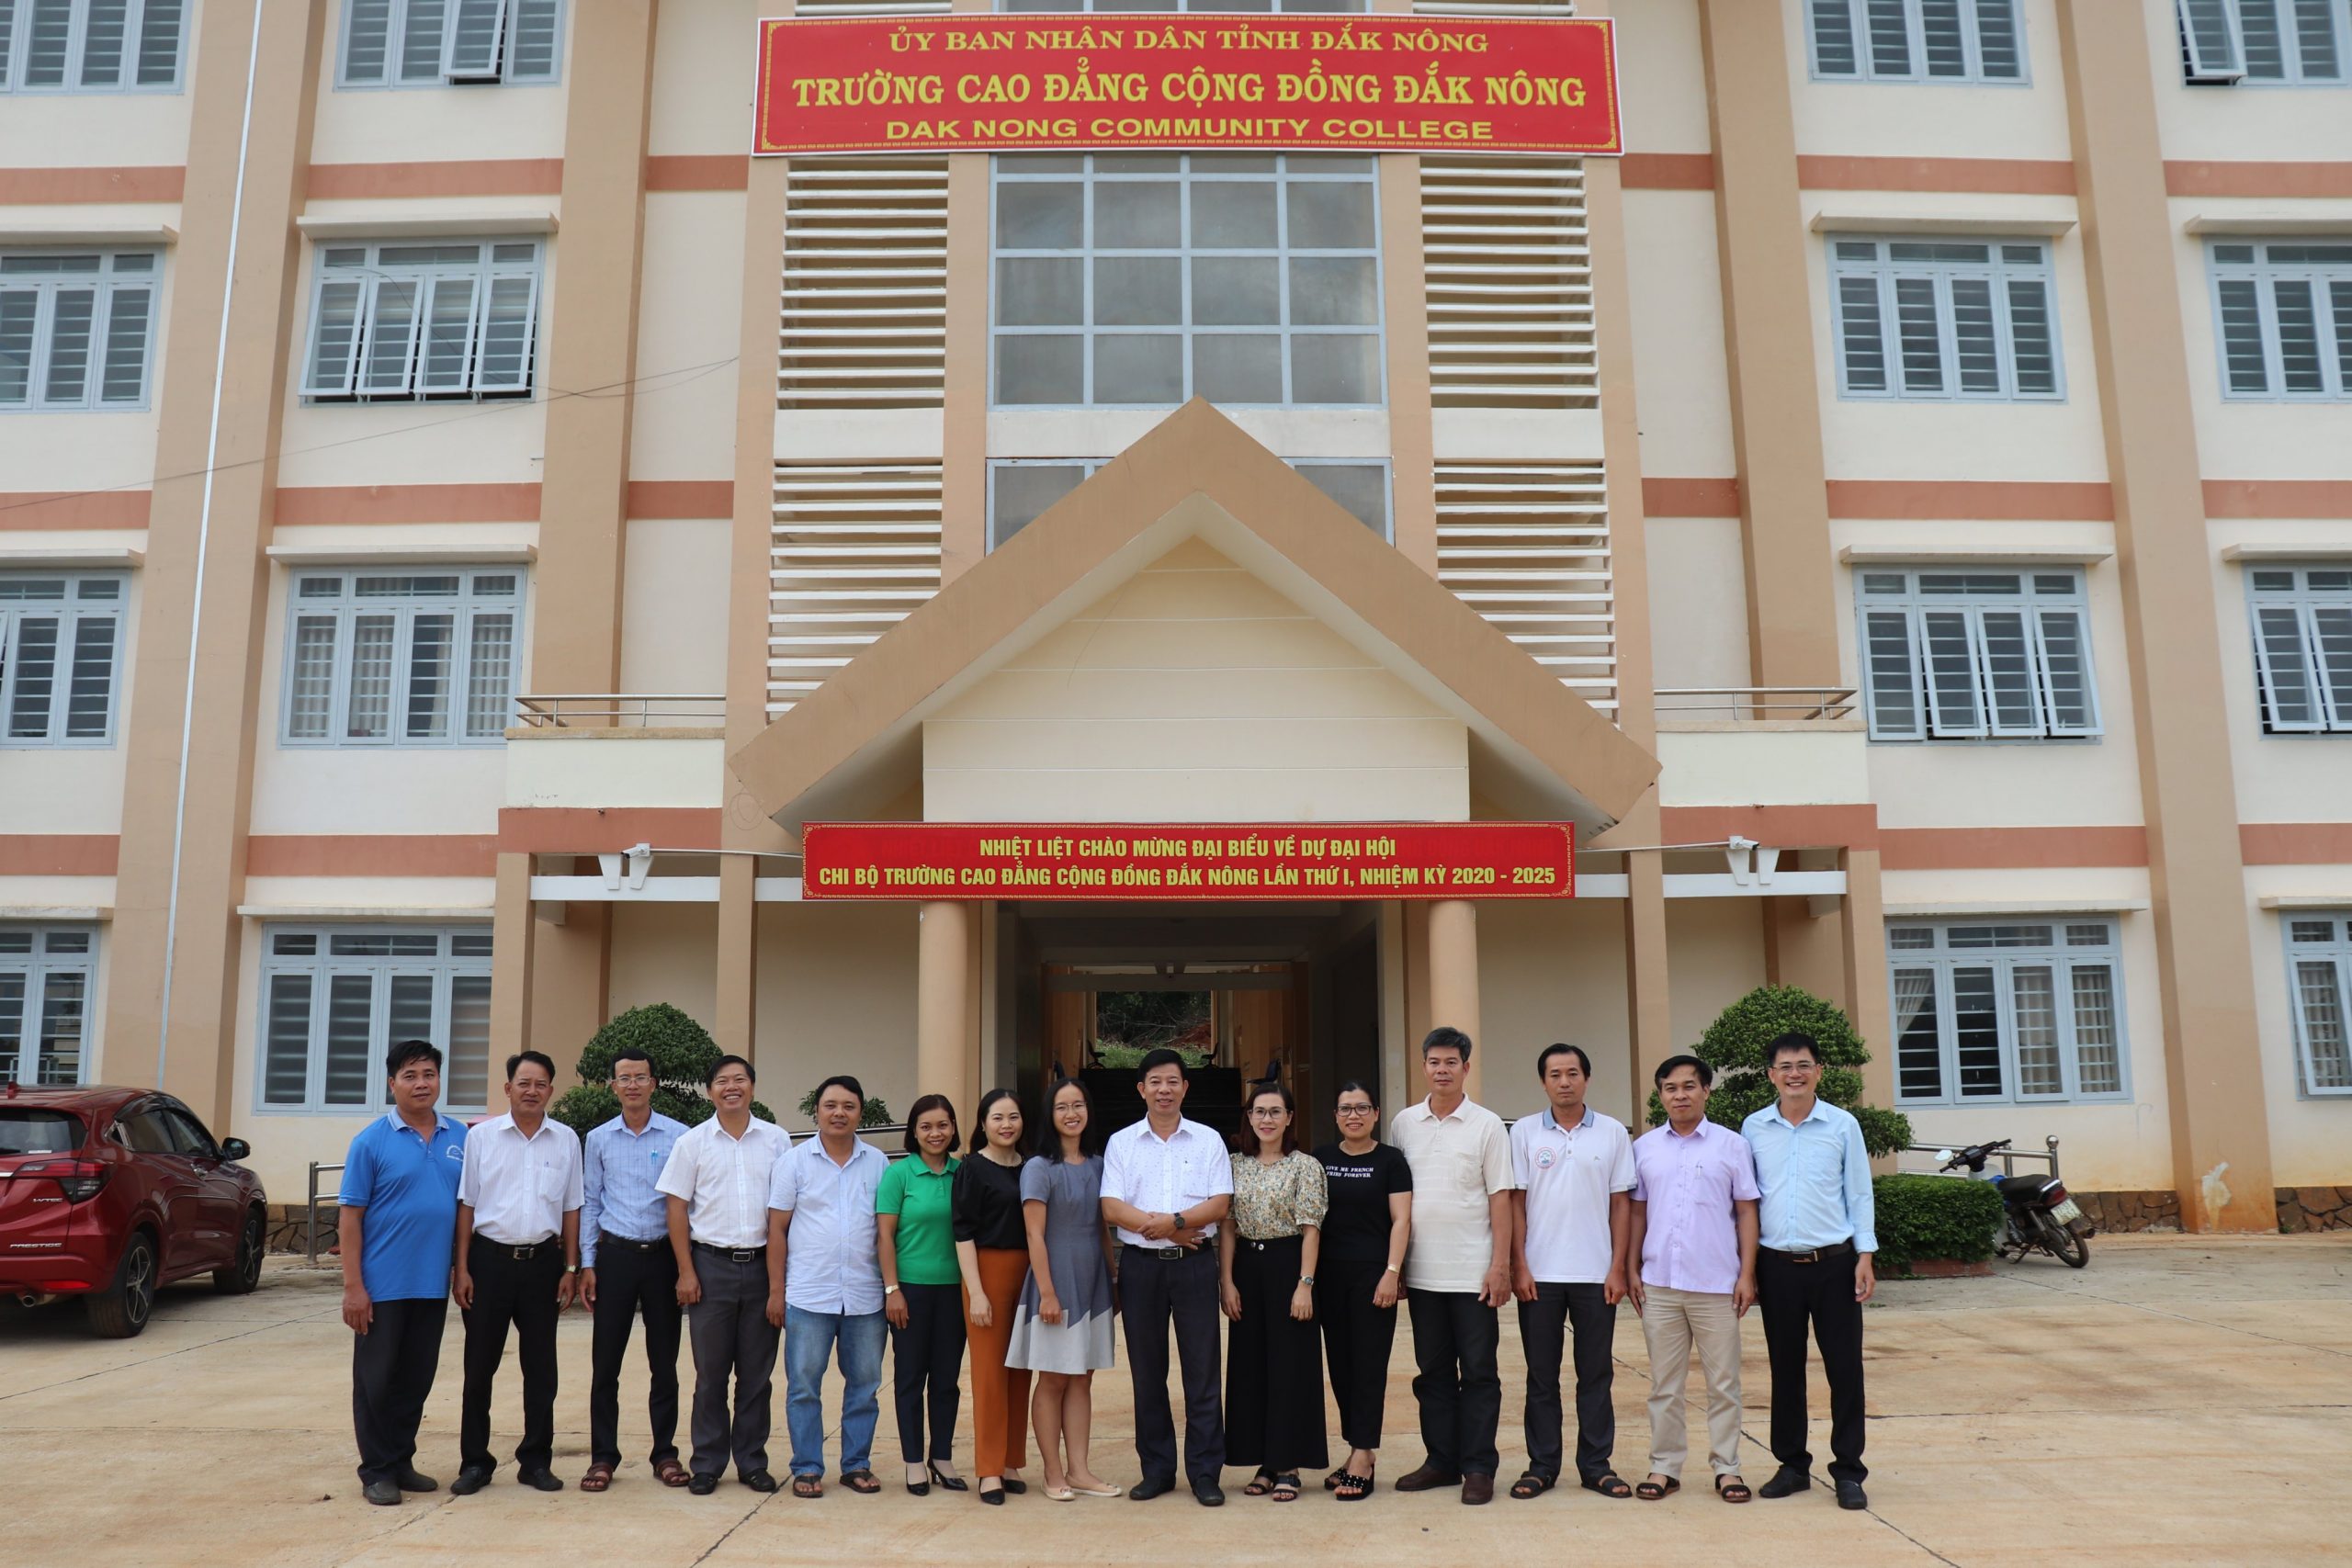 Ngày 07/06/2018 theo Ban Quản lý dự án đầu tư xây dựng các công trình dân dụng và công nghiệp tỉnh Đắk Nông, hiện các hạng mục giai đoạn 1 dự án Trường Cao đẳng cộng đồng tỉnh Đắk Nông …